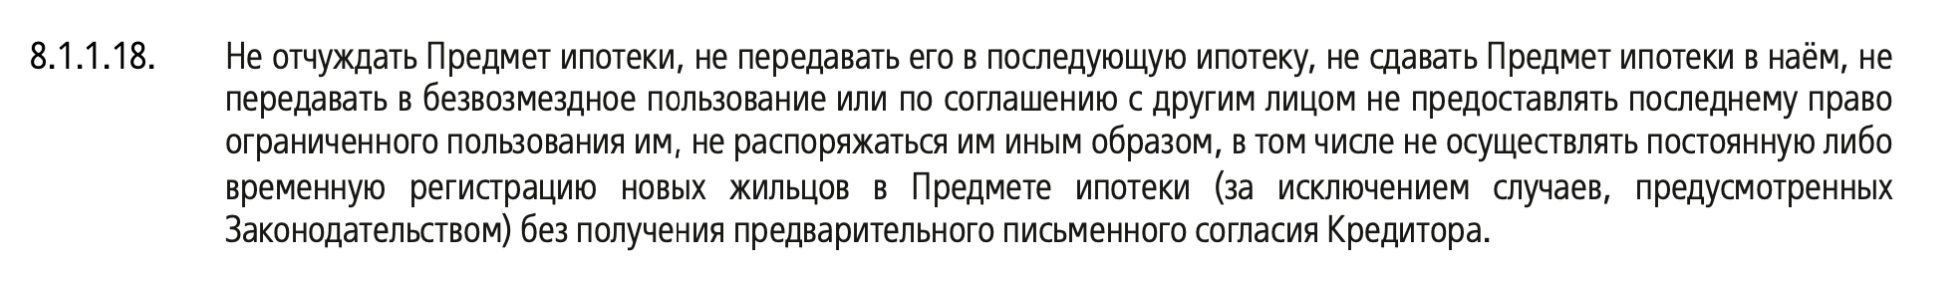 ВТБ требует письменно согласовать с ним сдачу ипотечной квартиры в наем. Источник: vtb.ru